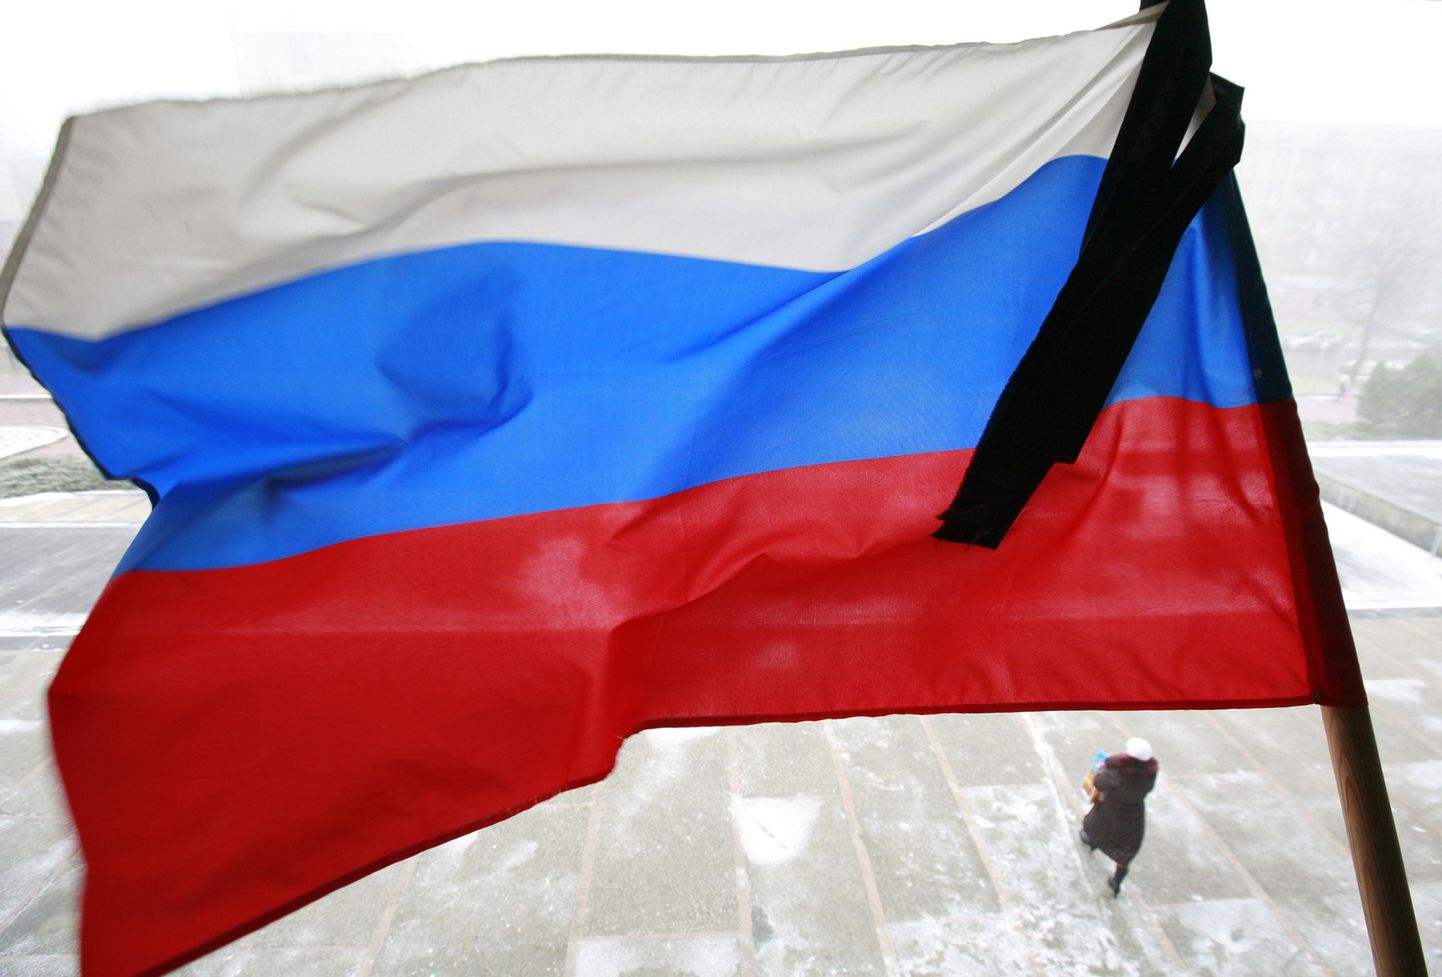 Venemaa mälestab Permi ööklubipõlengu ohvreid leinapäevaga.